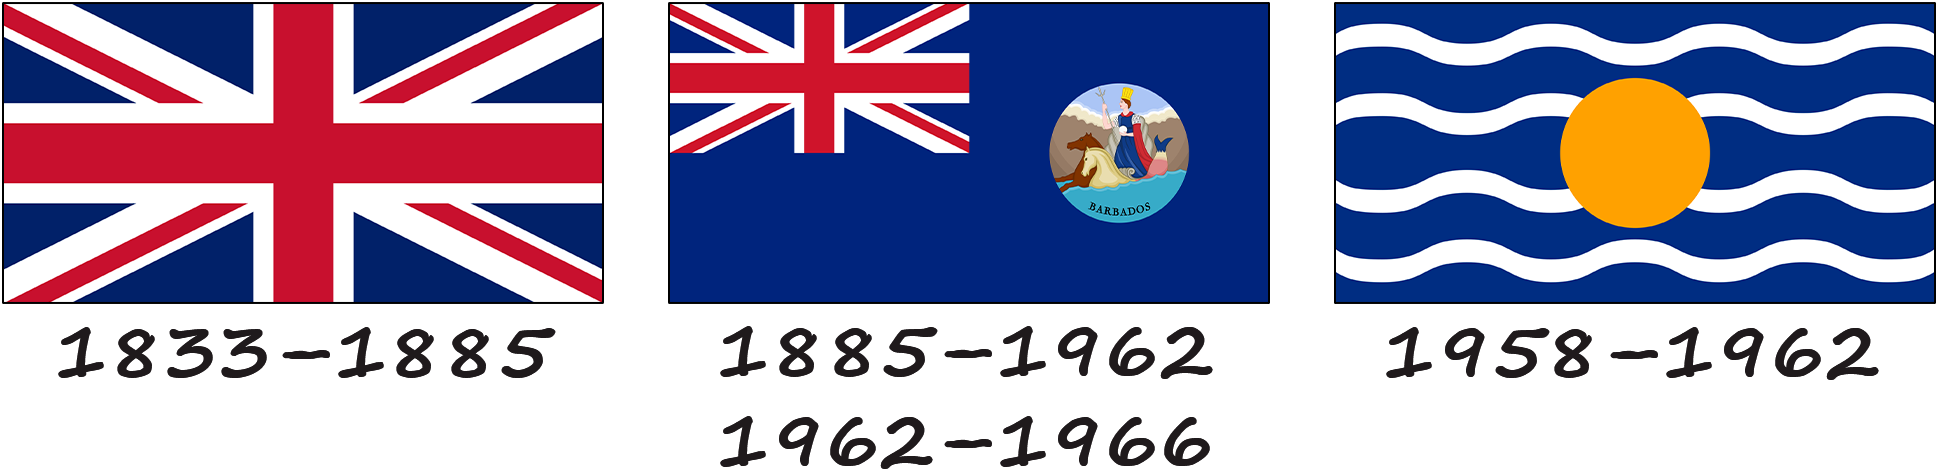 Historia de la bandera de Barbados